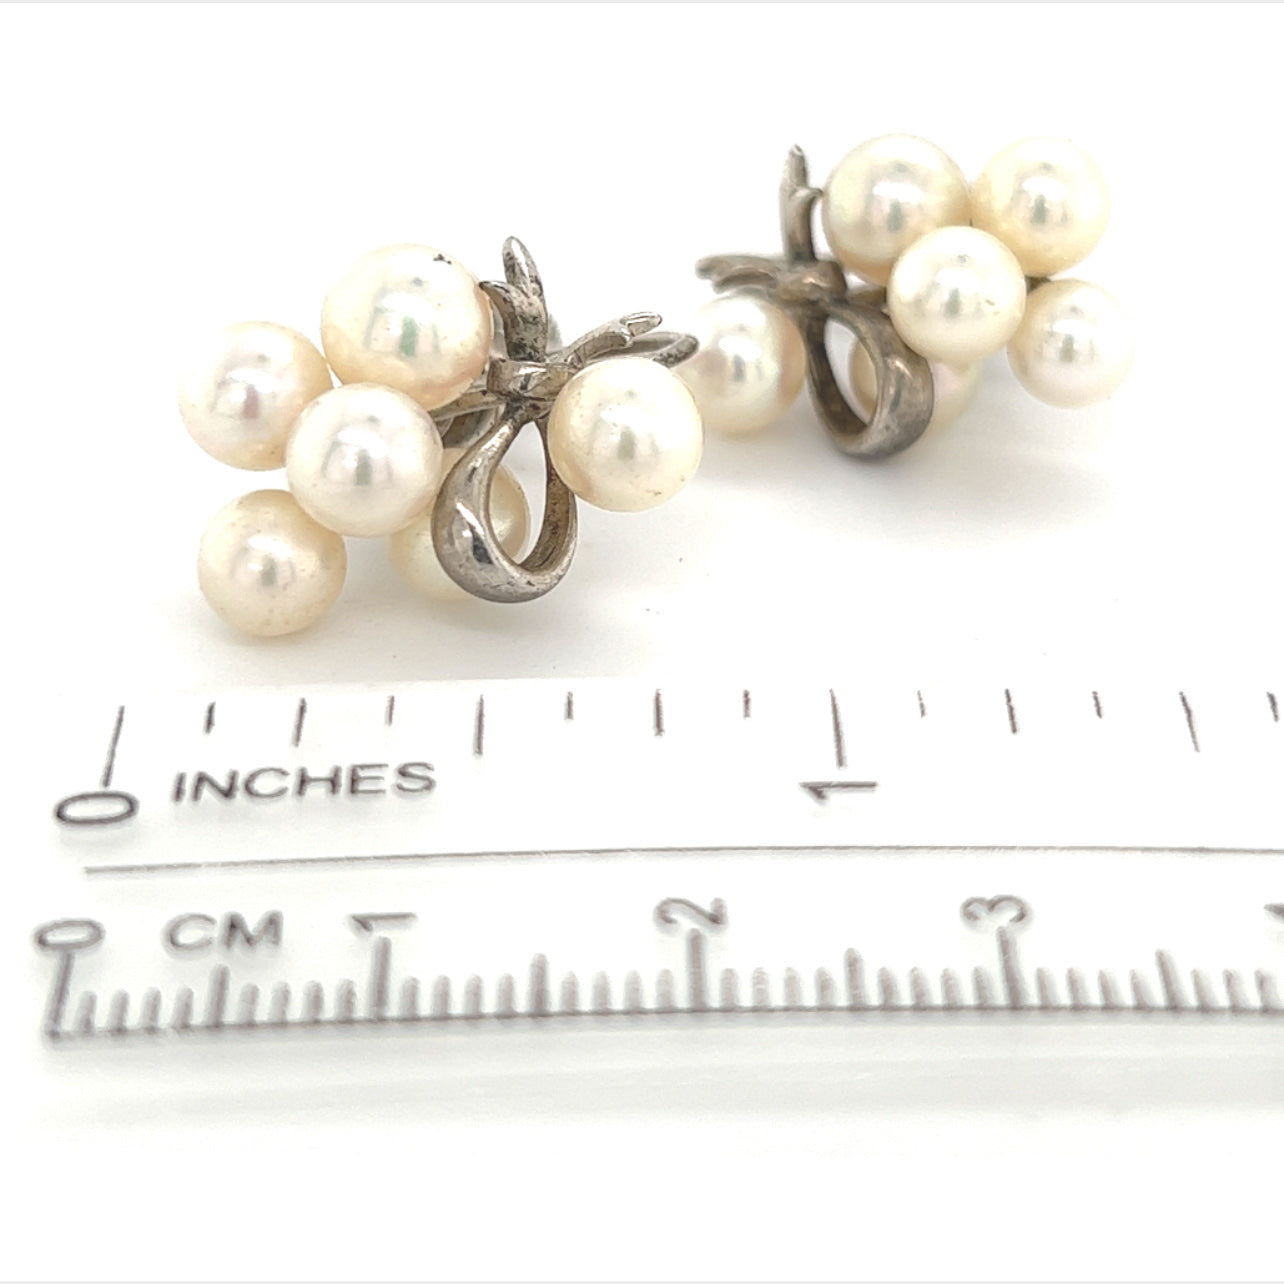 Mikimoto Estate Akoya Pearl Earrings Sterling Silver 6.65 mm 7.2 Gr M235 - Certified Fine Jewelry